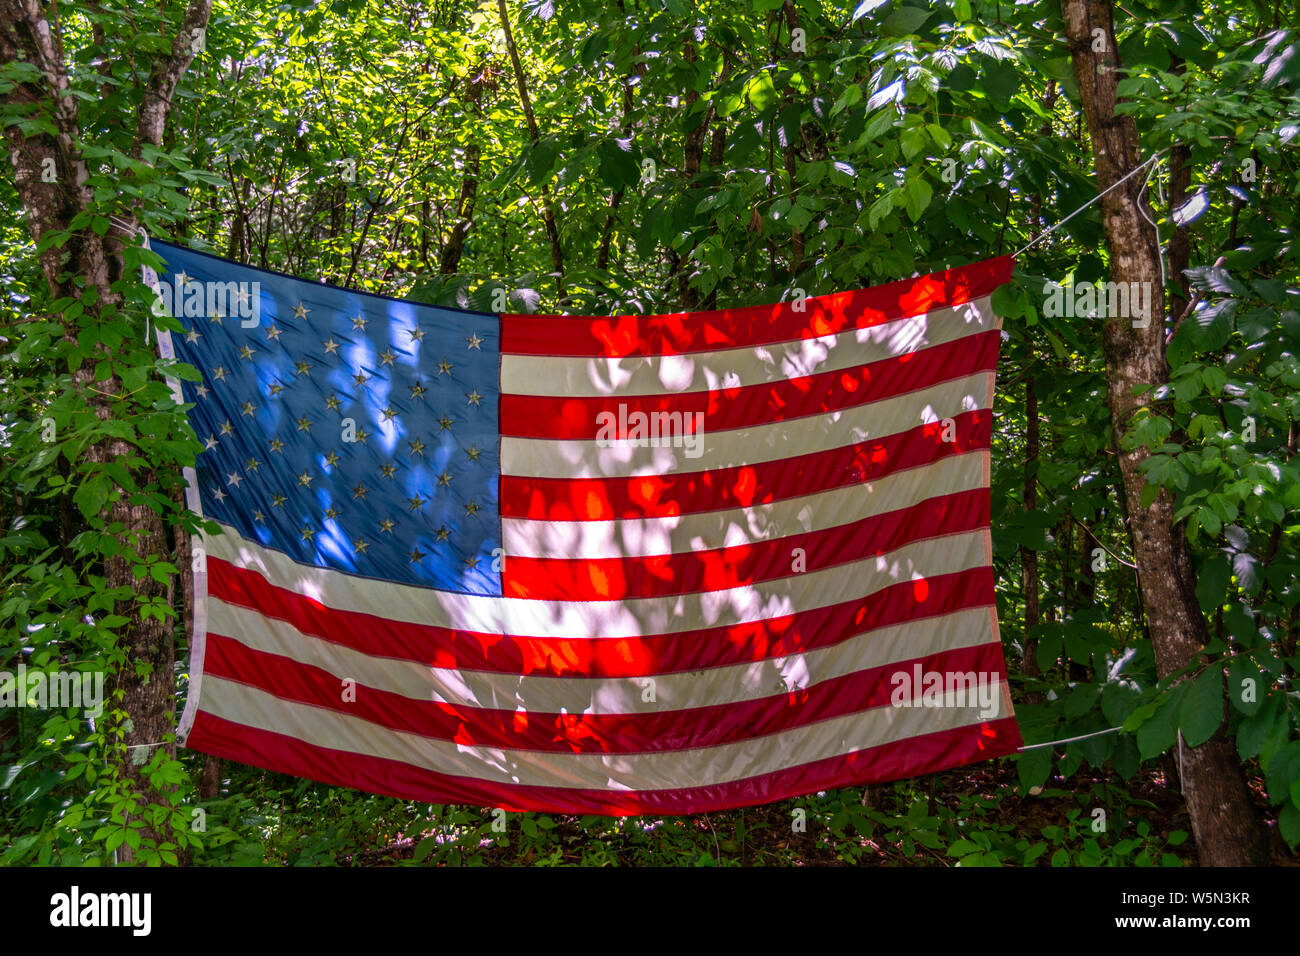 Drapeau américain affiché en étant accroché sur les arbres dans un camping Banque D'Images